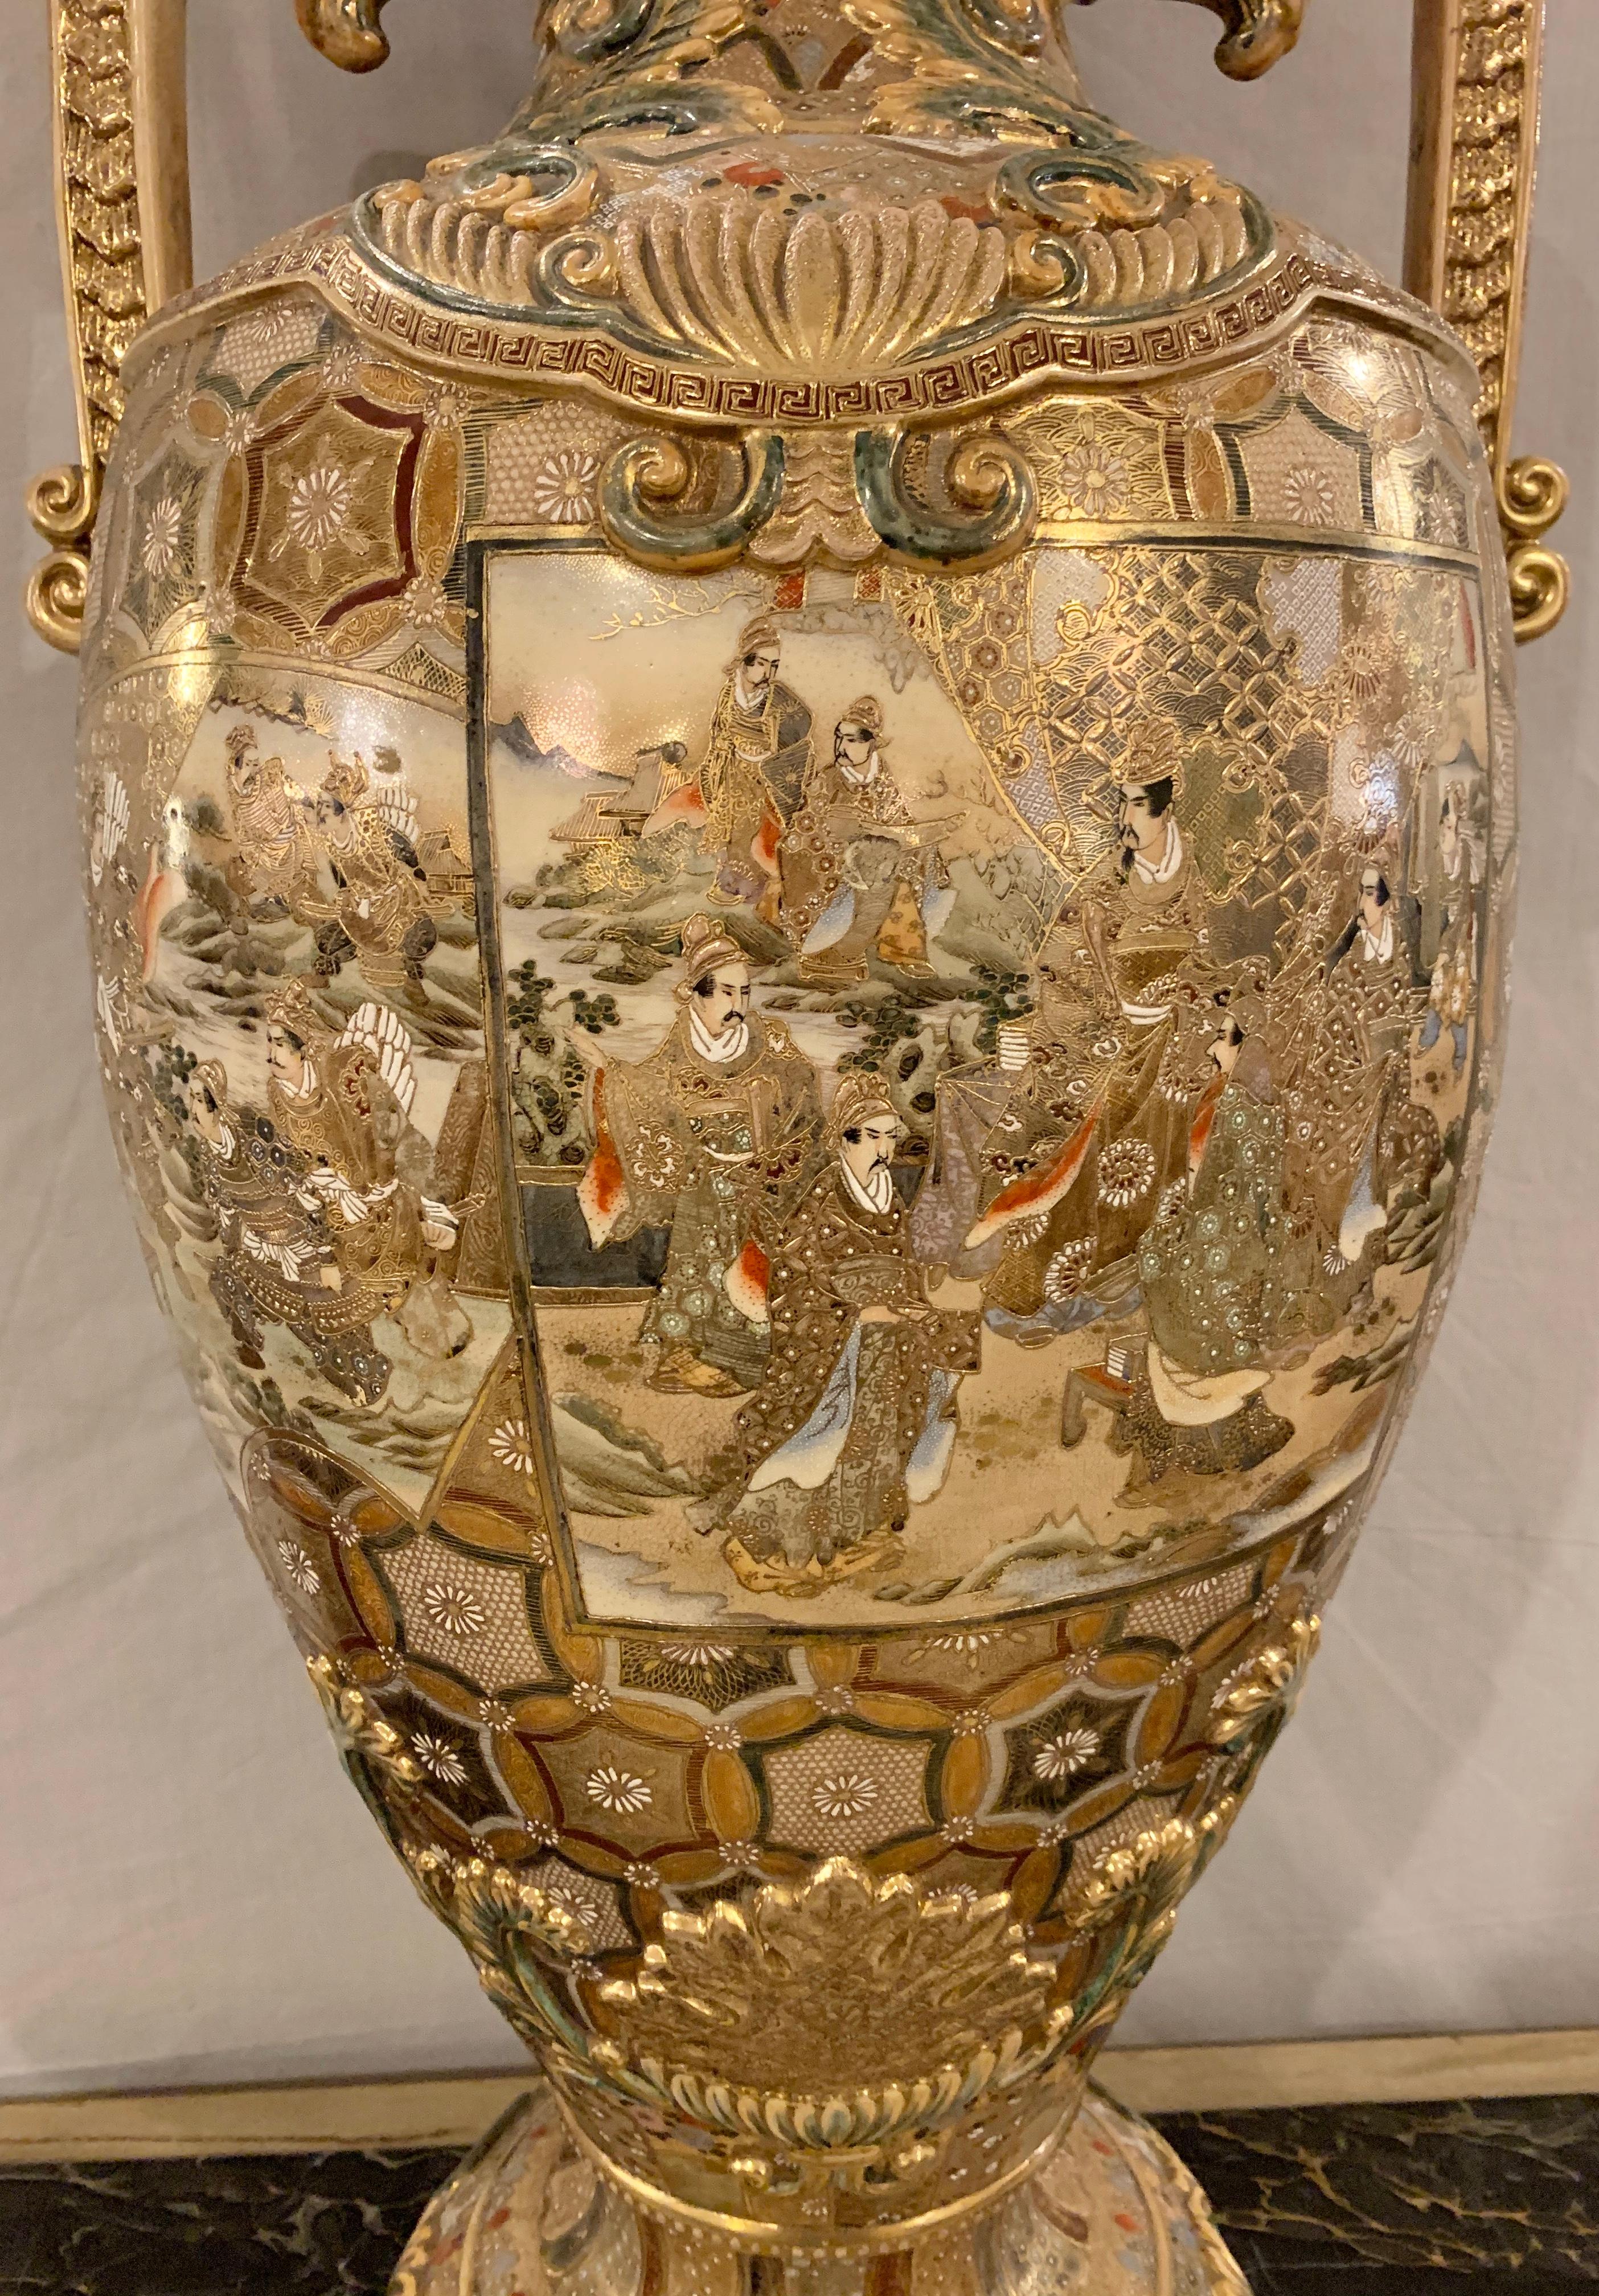 Satsuma Thousand Face Vase or Urn Palace Sized Twin Handled 9